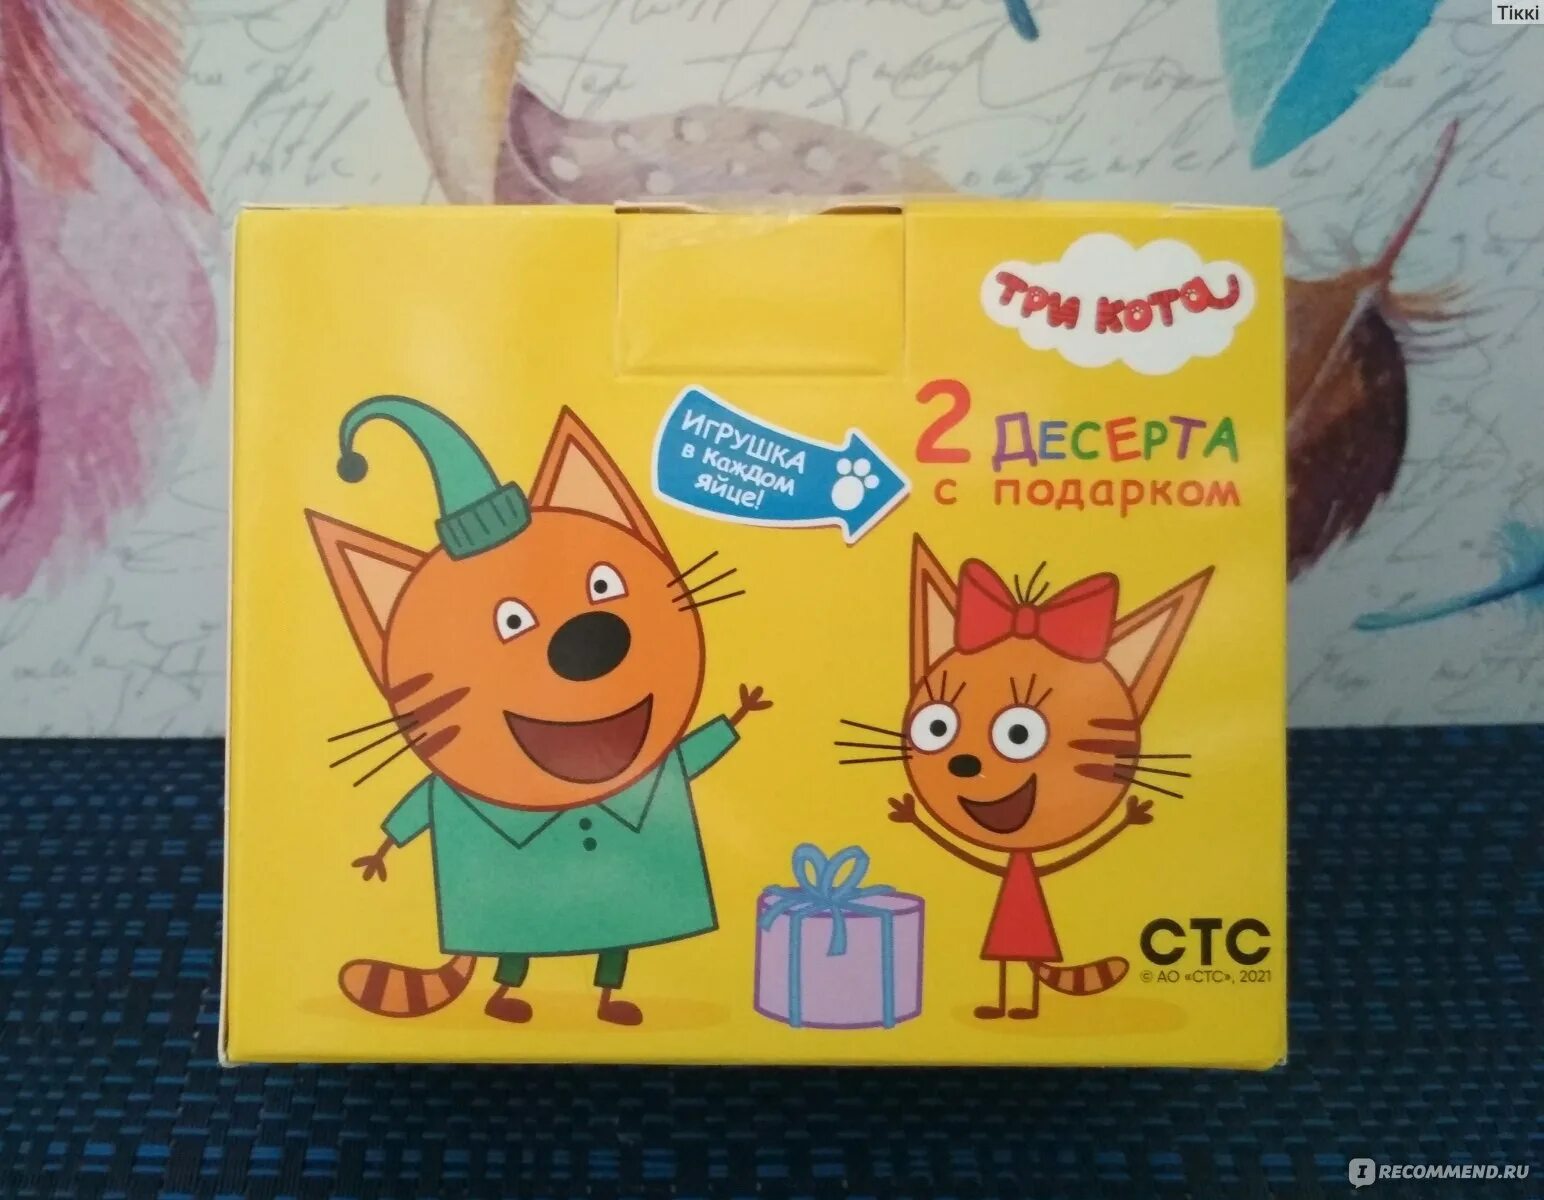 Шоколадные три кота. Конфитрейд / Кидсбокс три кота. Яйцо Kids Box три кота. Шоколадное яйцо Kids Box три кота. Кидсбокс три кота.